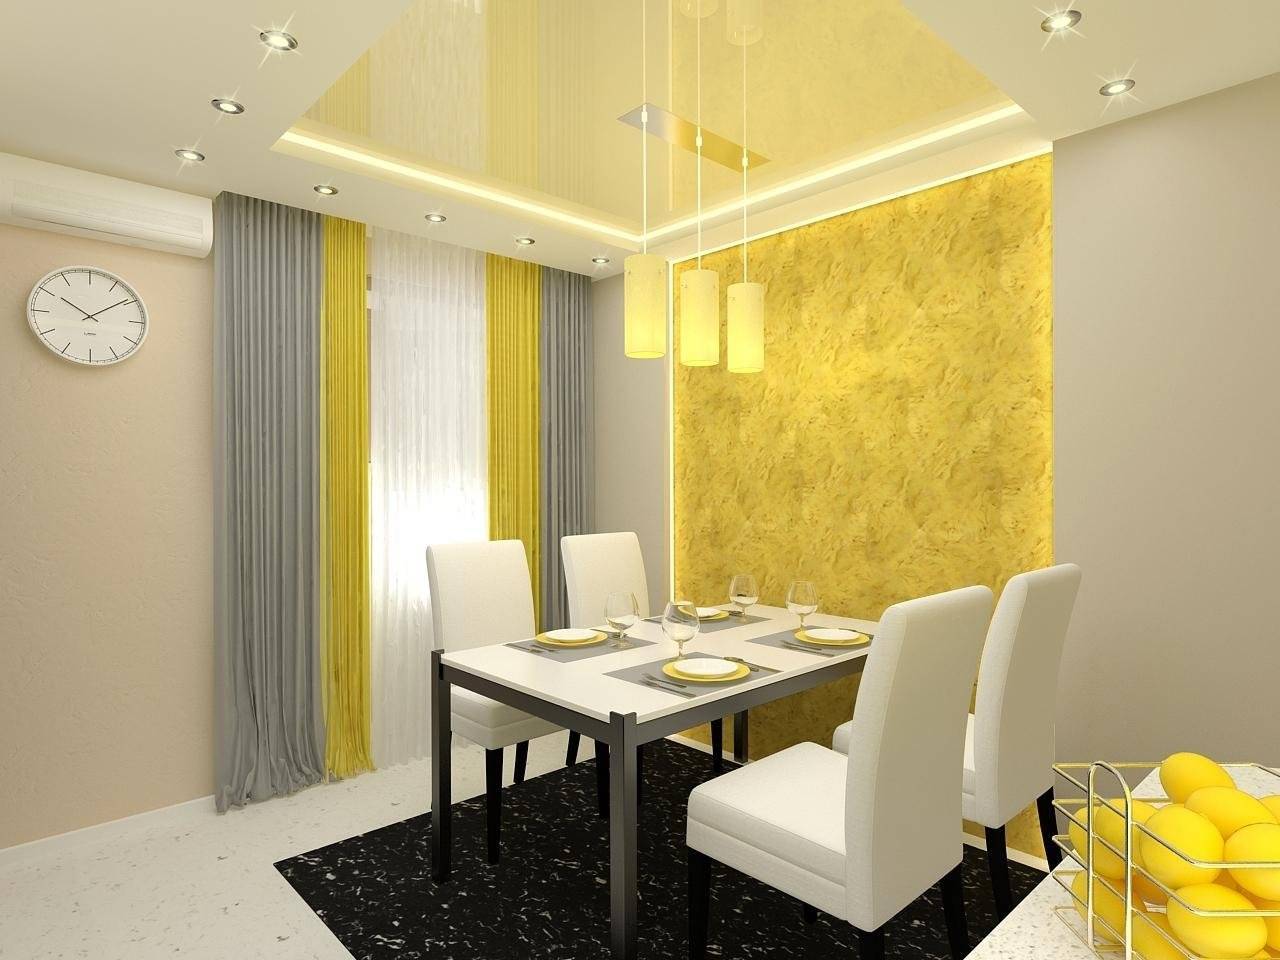 Обои желтого цвета для стен [47 фото], с чем сочетаются желтые обои в квартире, лучшие комбинации обоев желтого цвета с черным, серым, белым и зеленым.